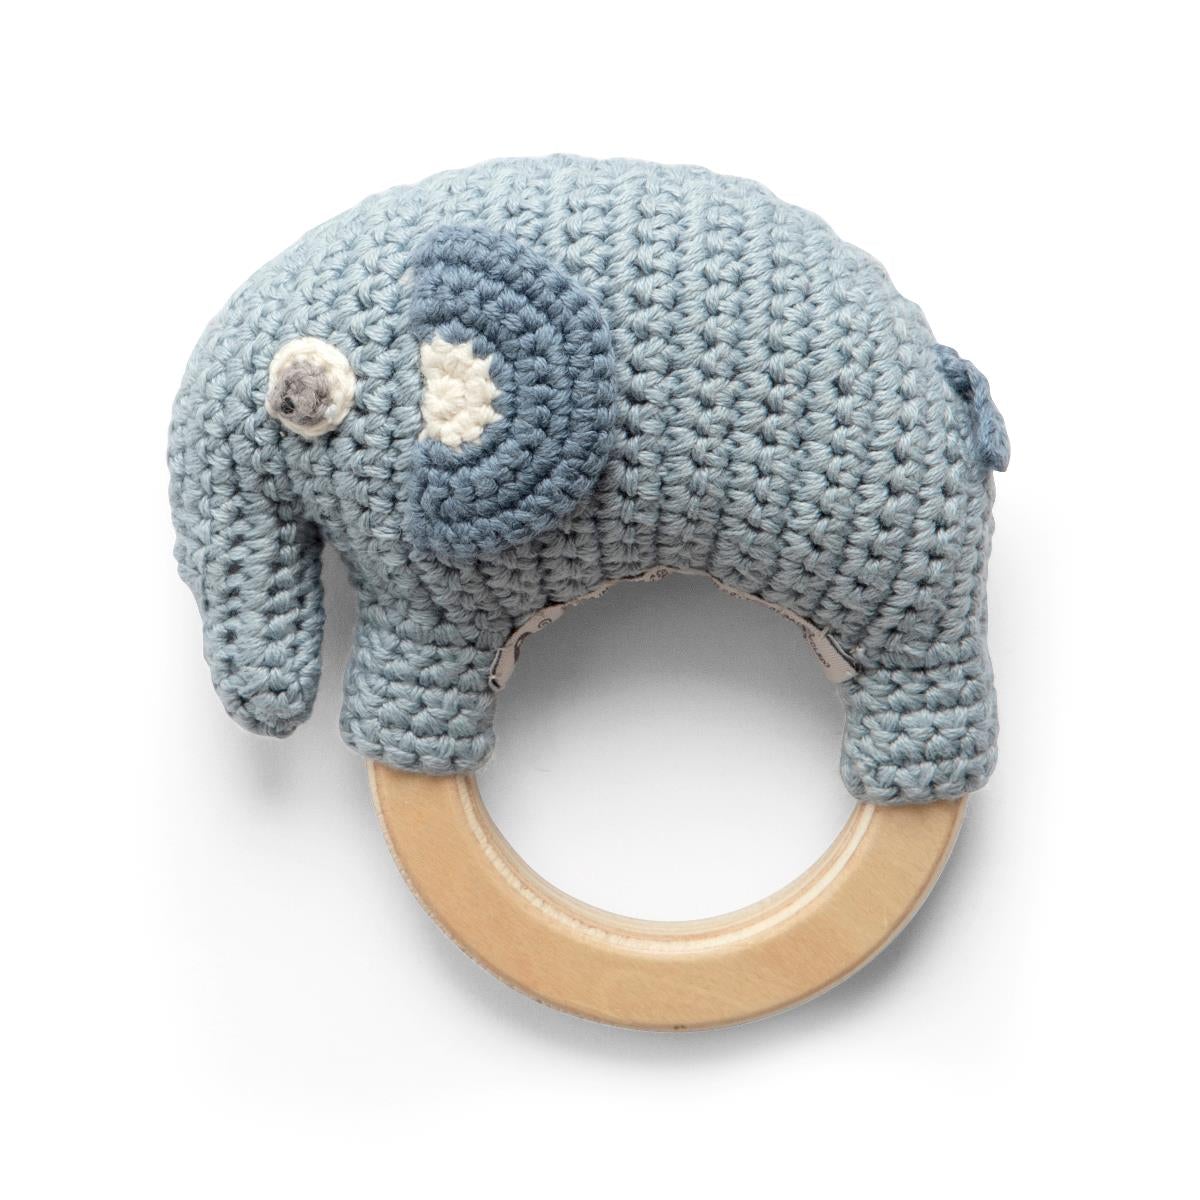 Hochet en crochet Éléphant bleu - SEBRA 300910019 5704680061911